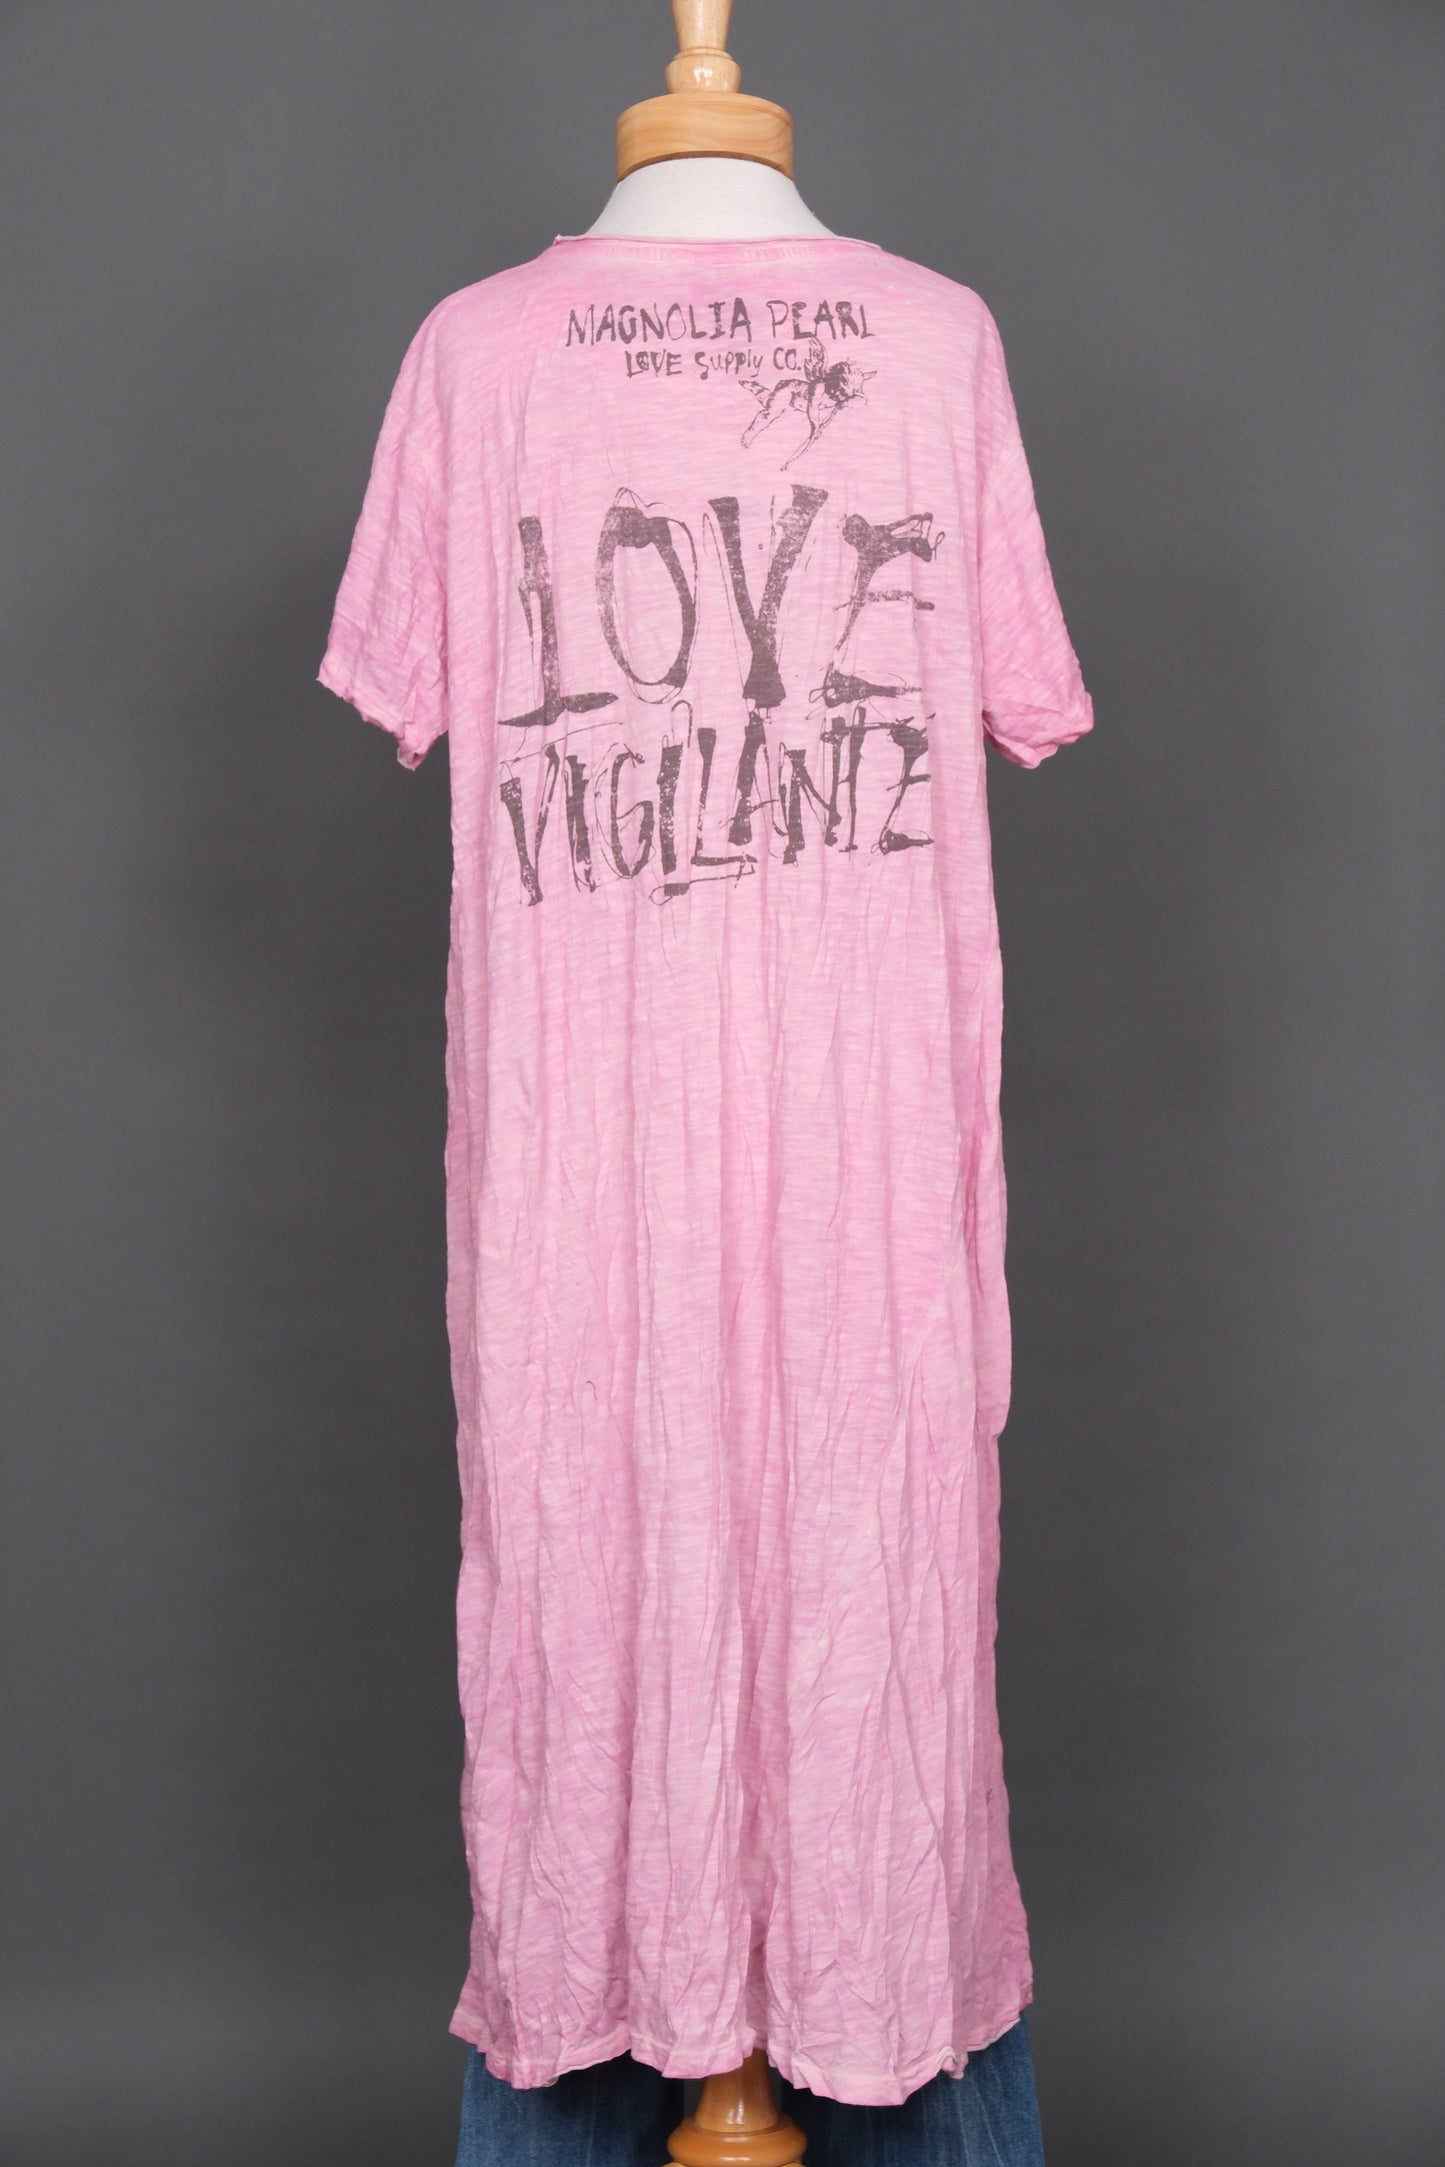 Guadalupe Love Vigilante T Dress by Magnolia Pearl